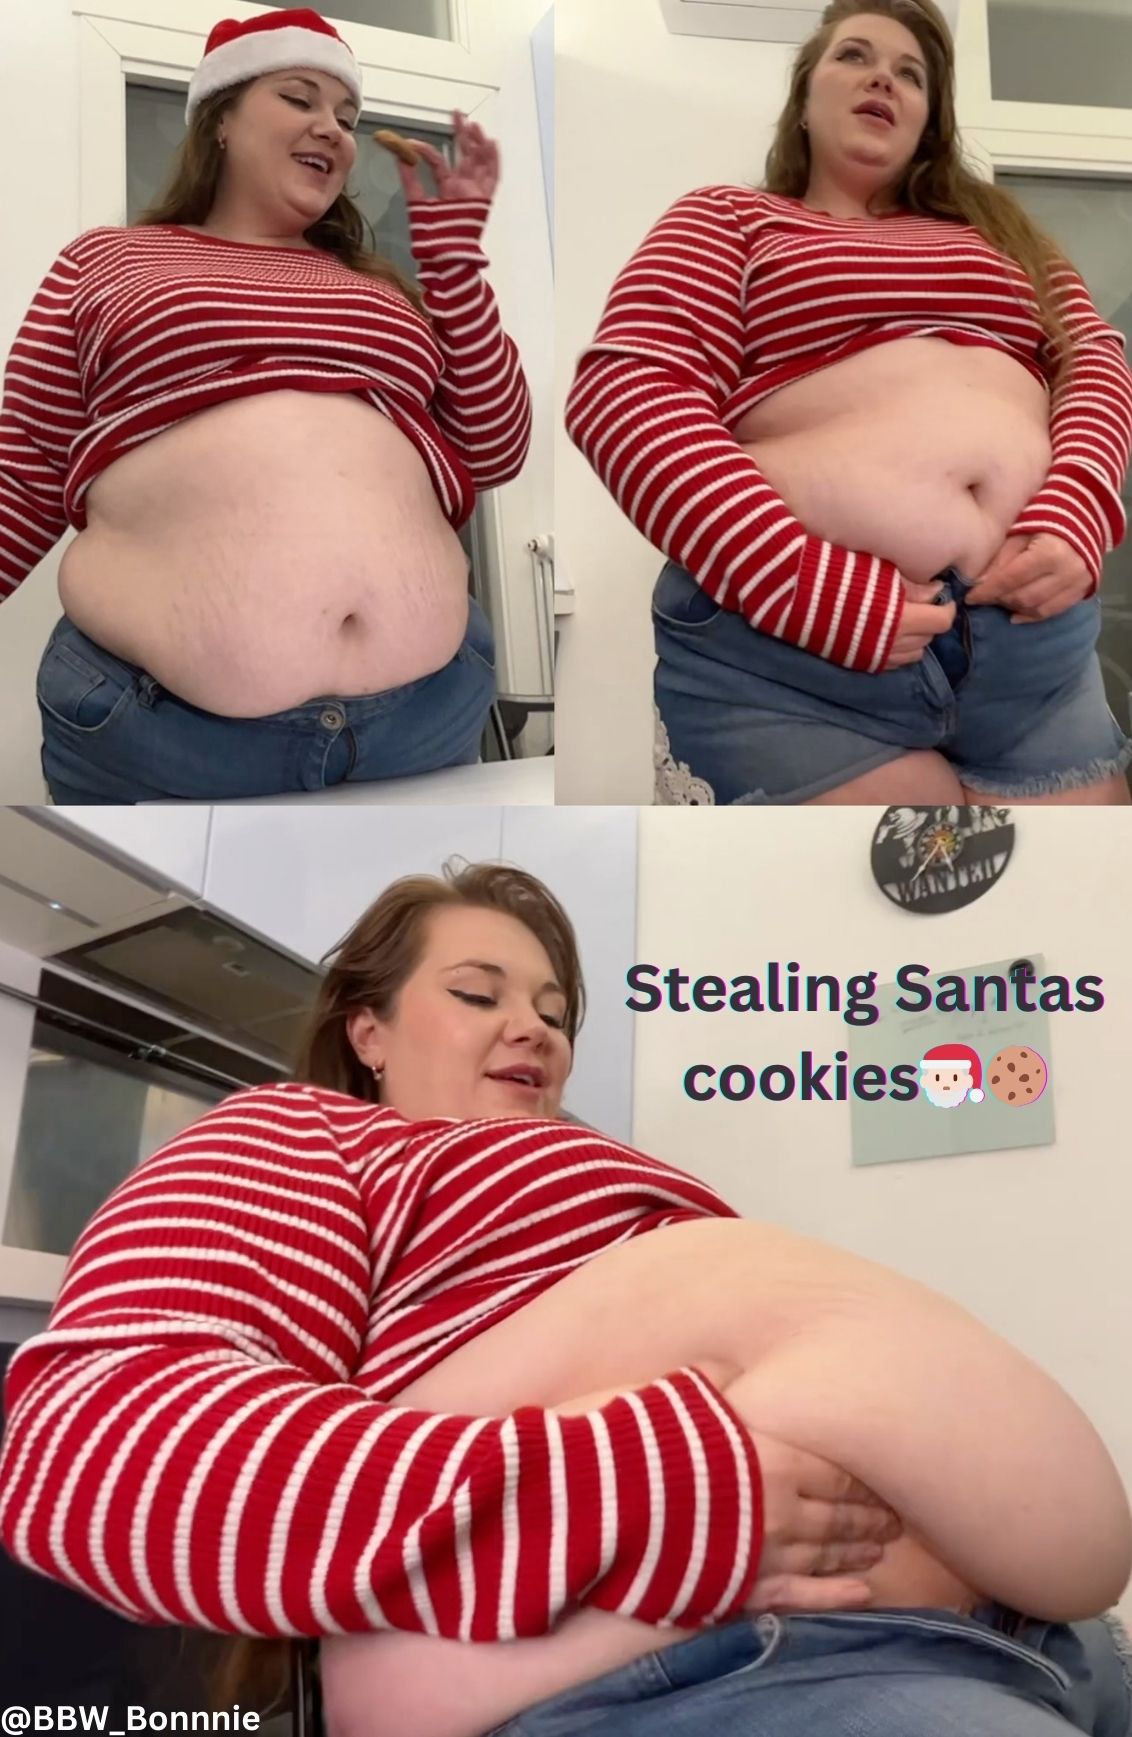 Stealing Santas cookies pic.jpg